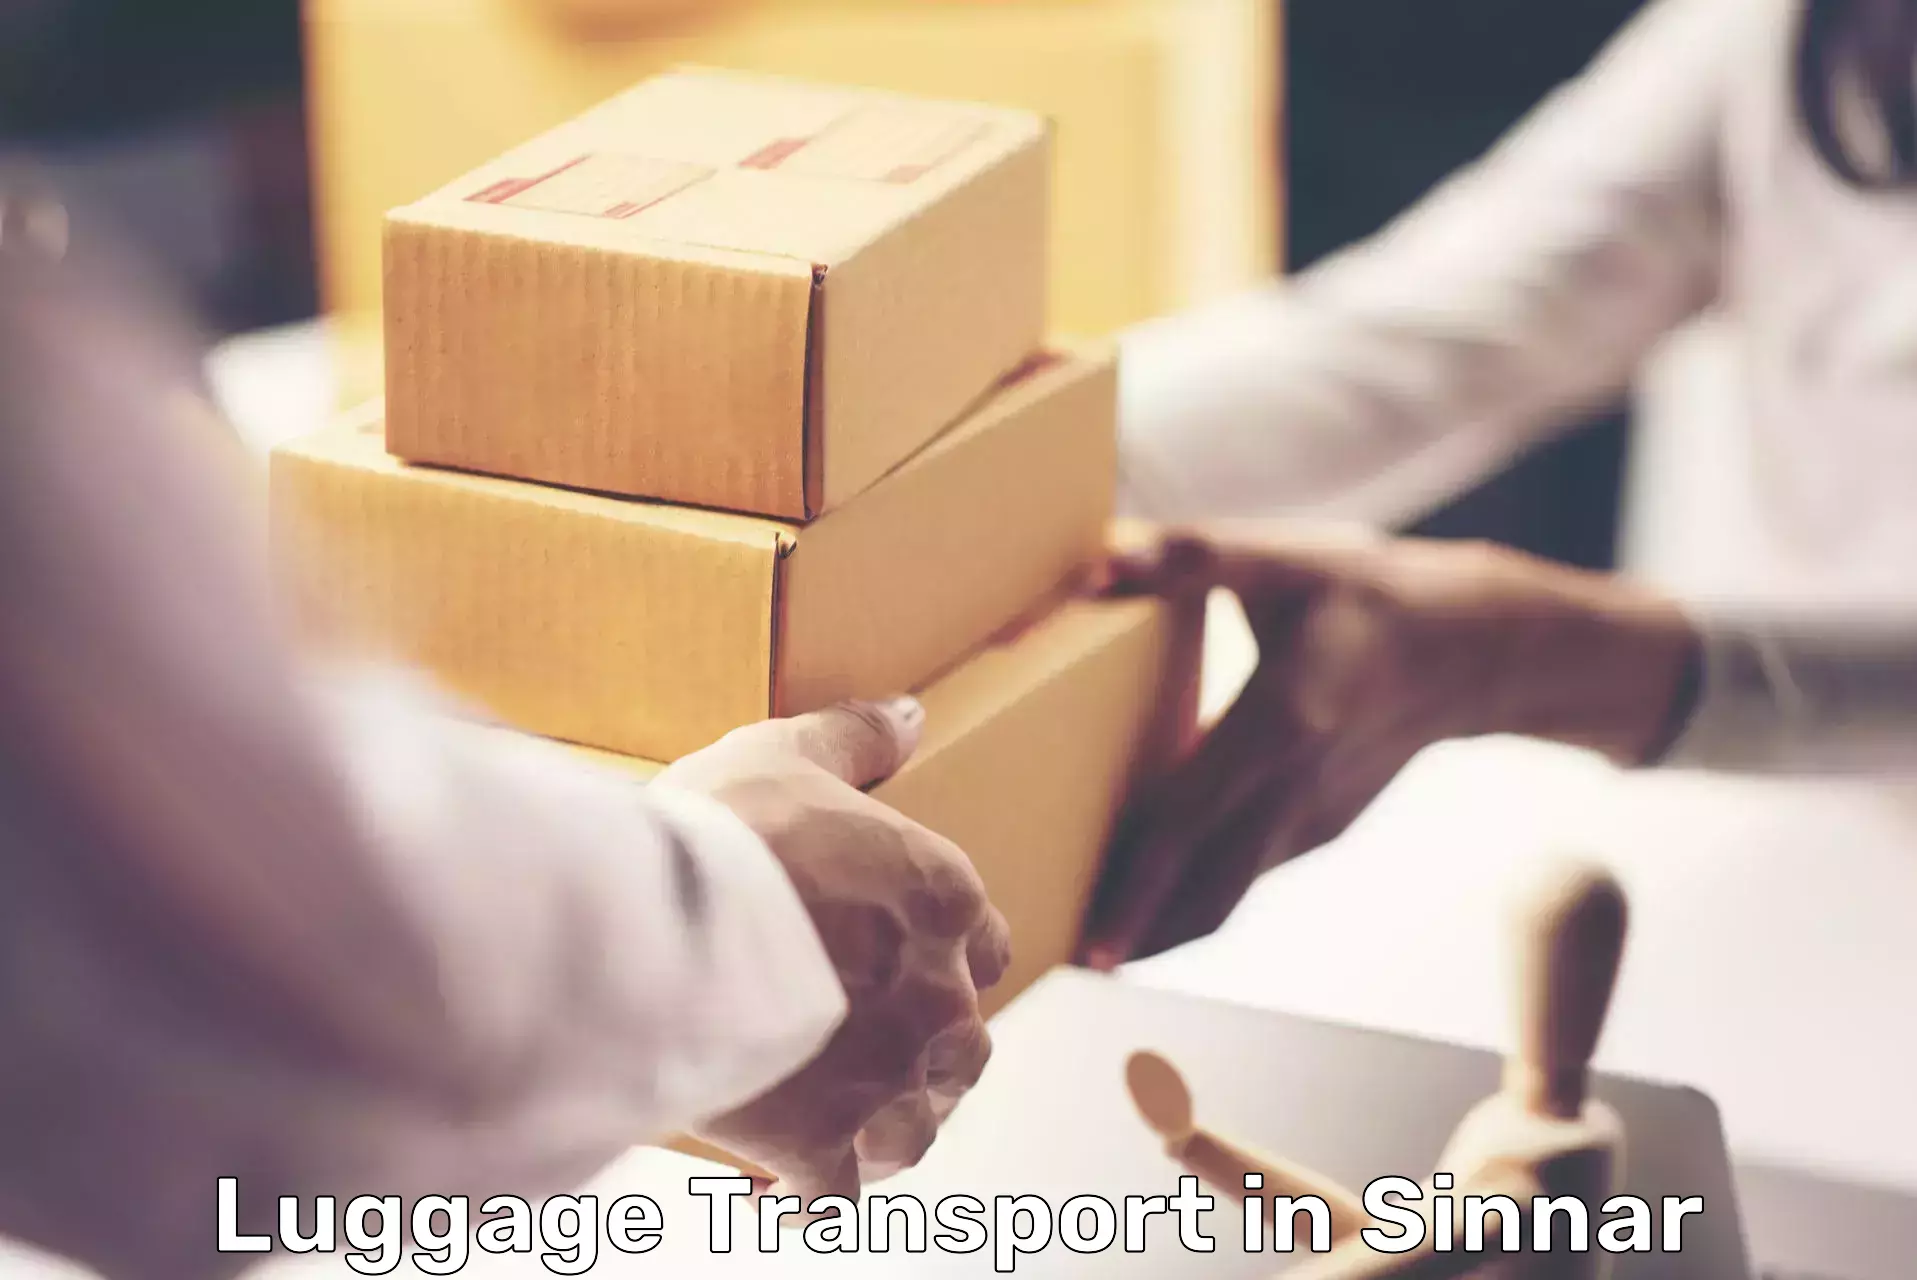 Luggage shipping logistics in Sinnar